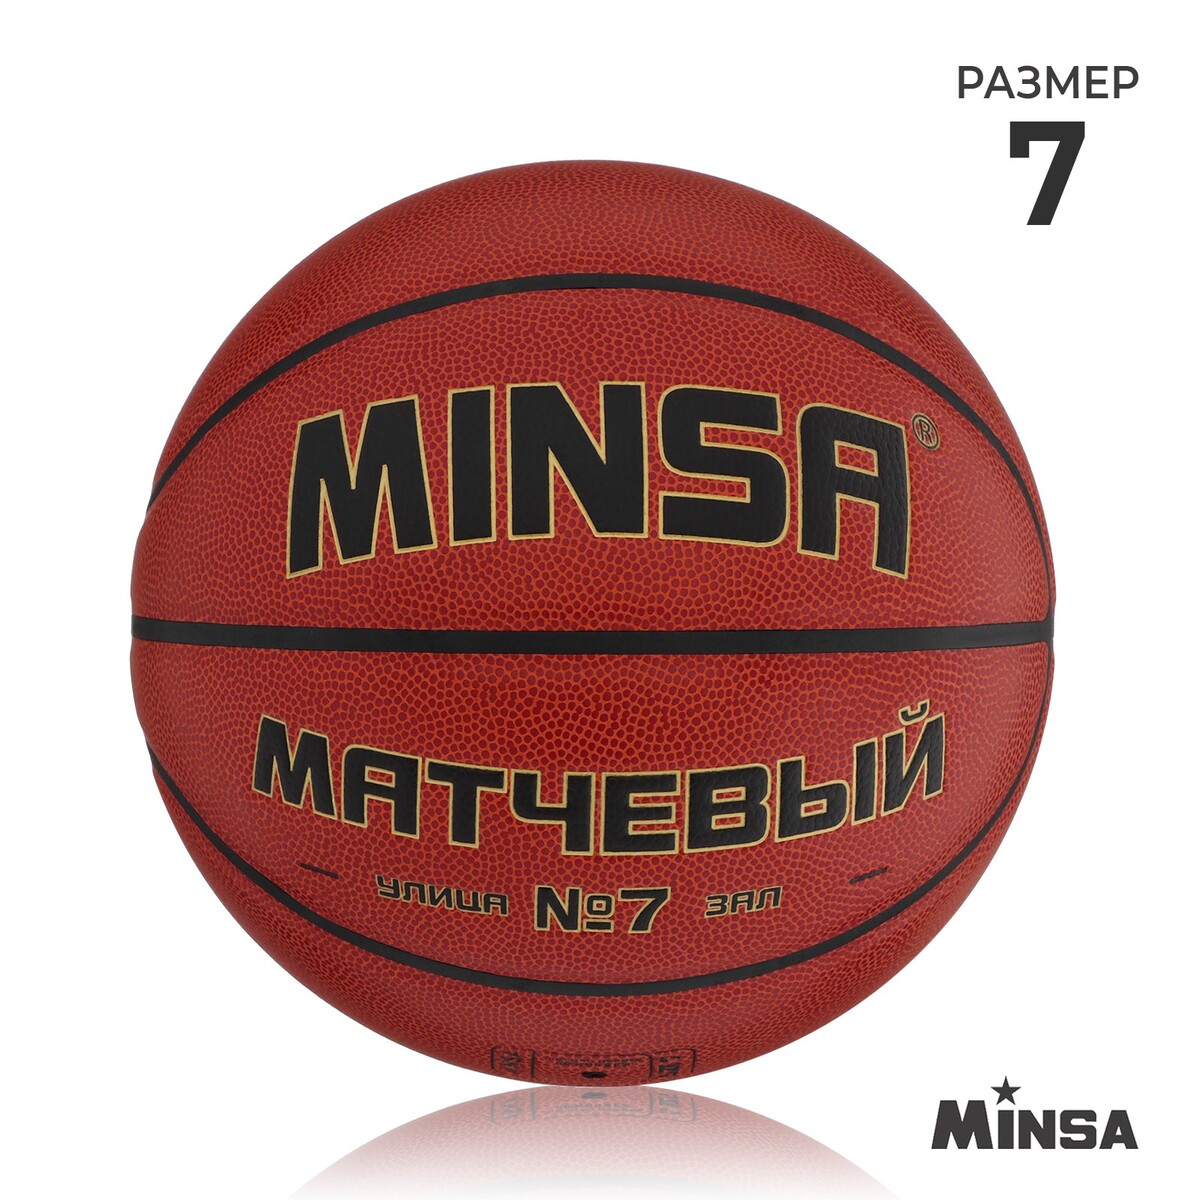 Баскетбольный мяч minsa, матчевый, microfiber pu, клееный, 8 панелей, р. 7 баскетбольный мяч minsa тренировочный pu клееный 8 панелей р 6